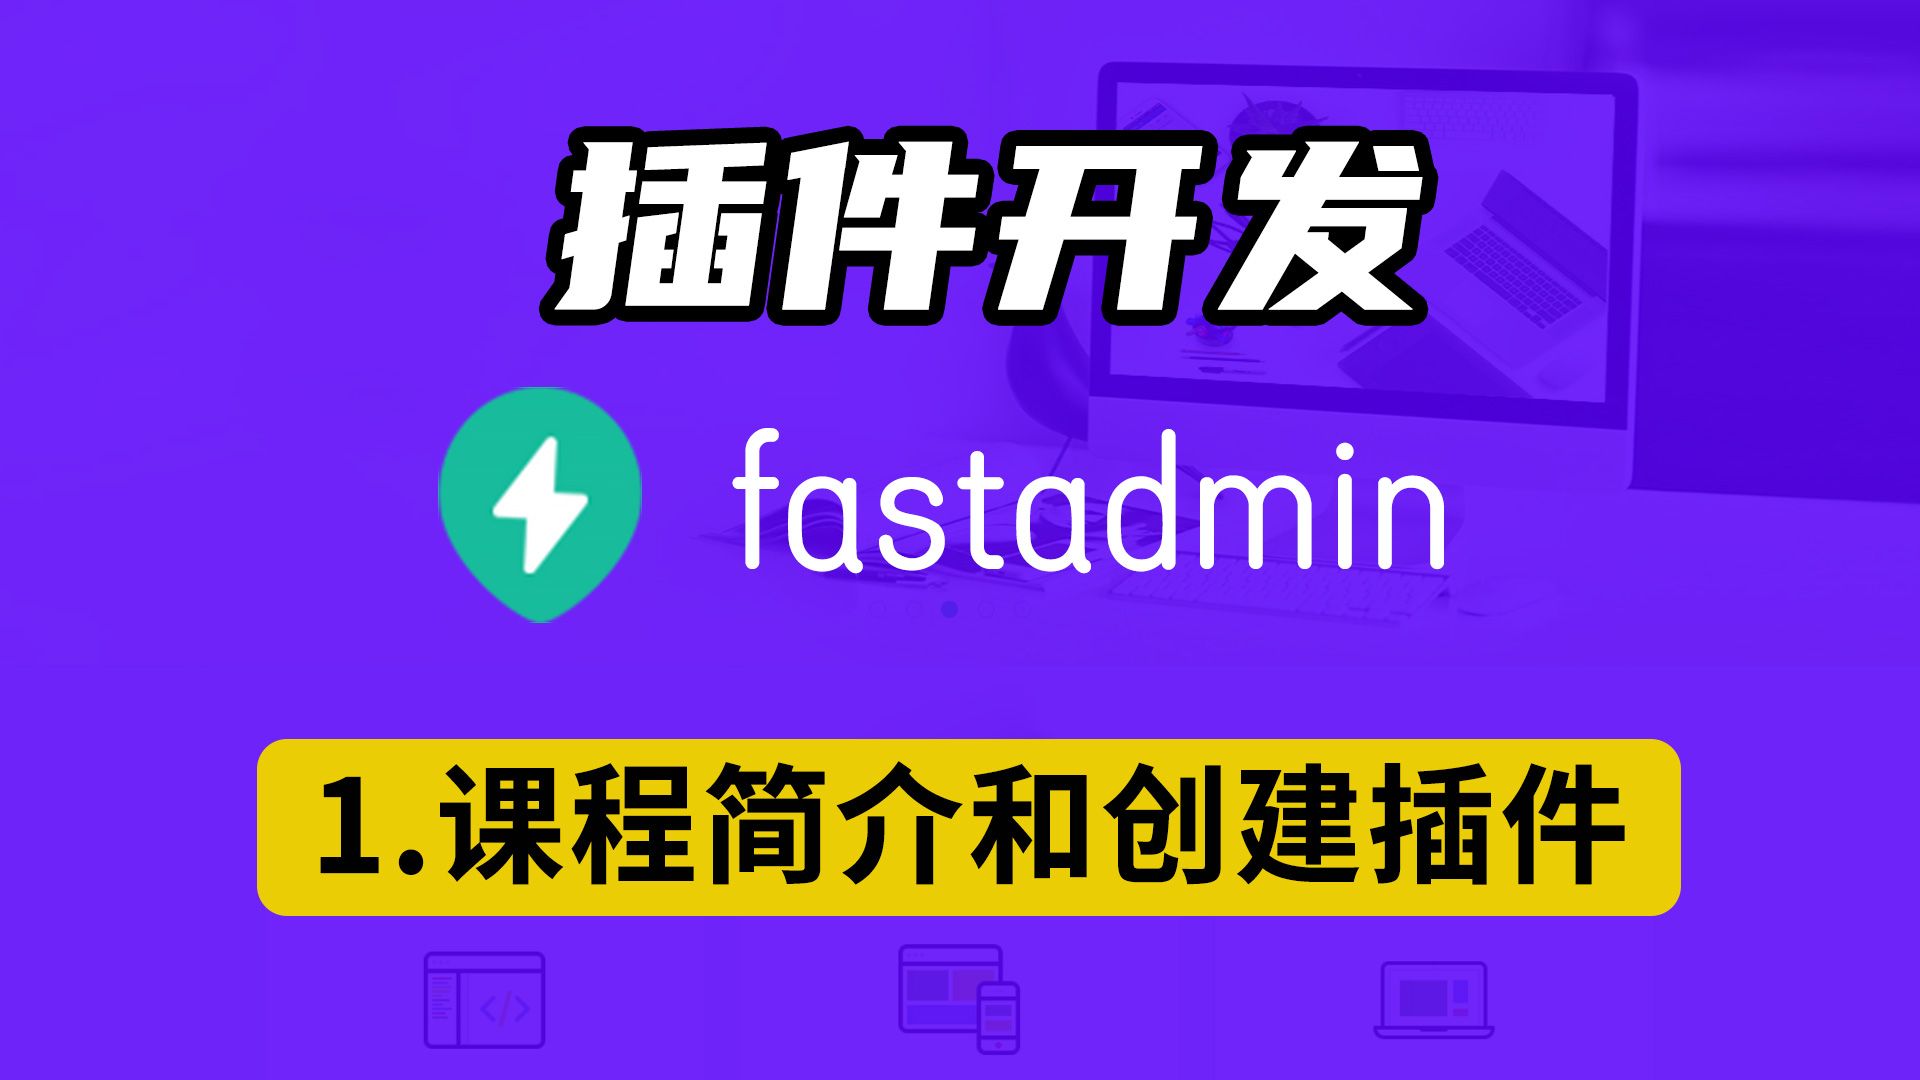 8节课 用一个案例就能学会fastadmin插件开发